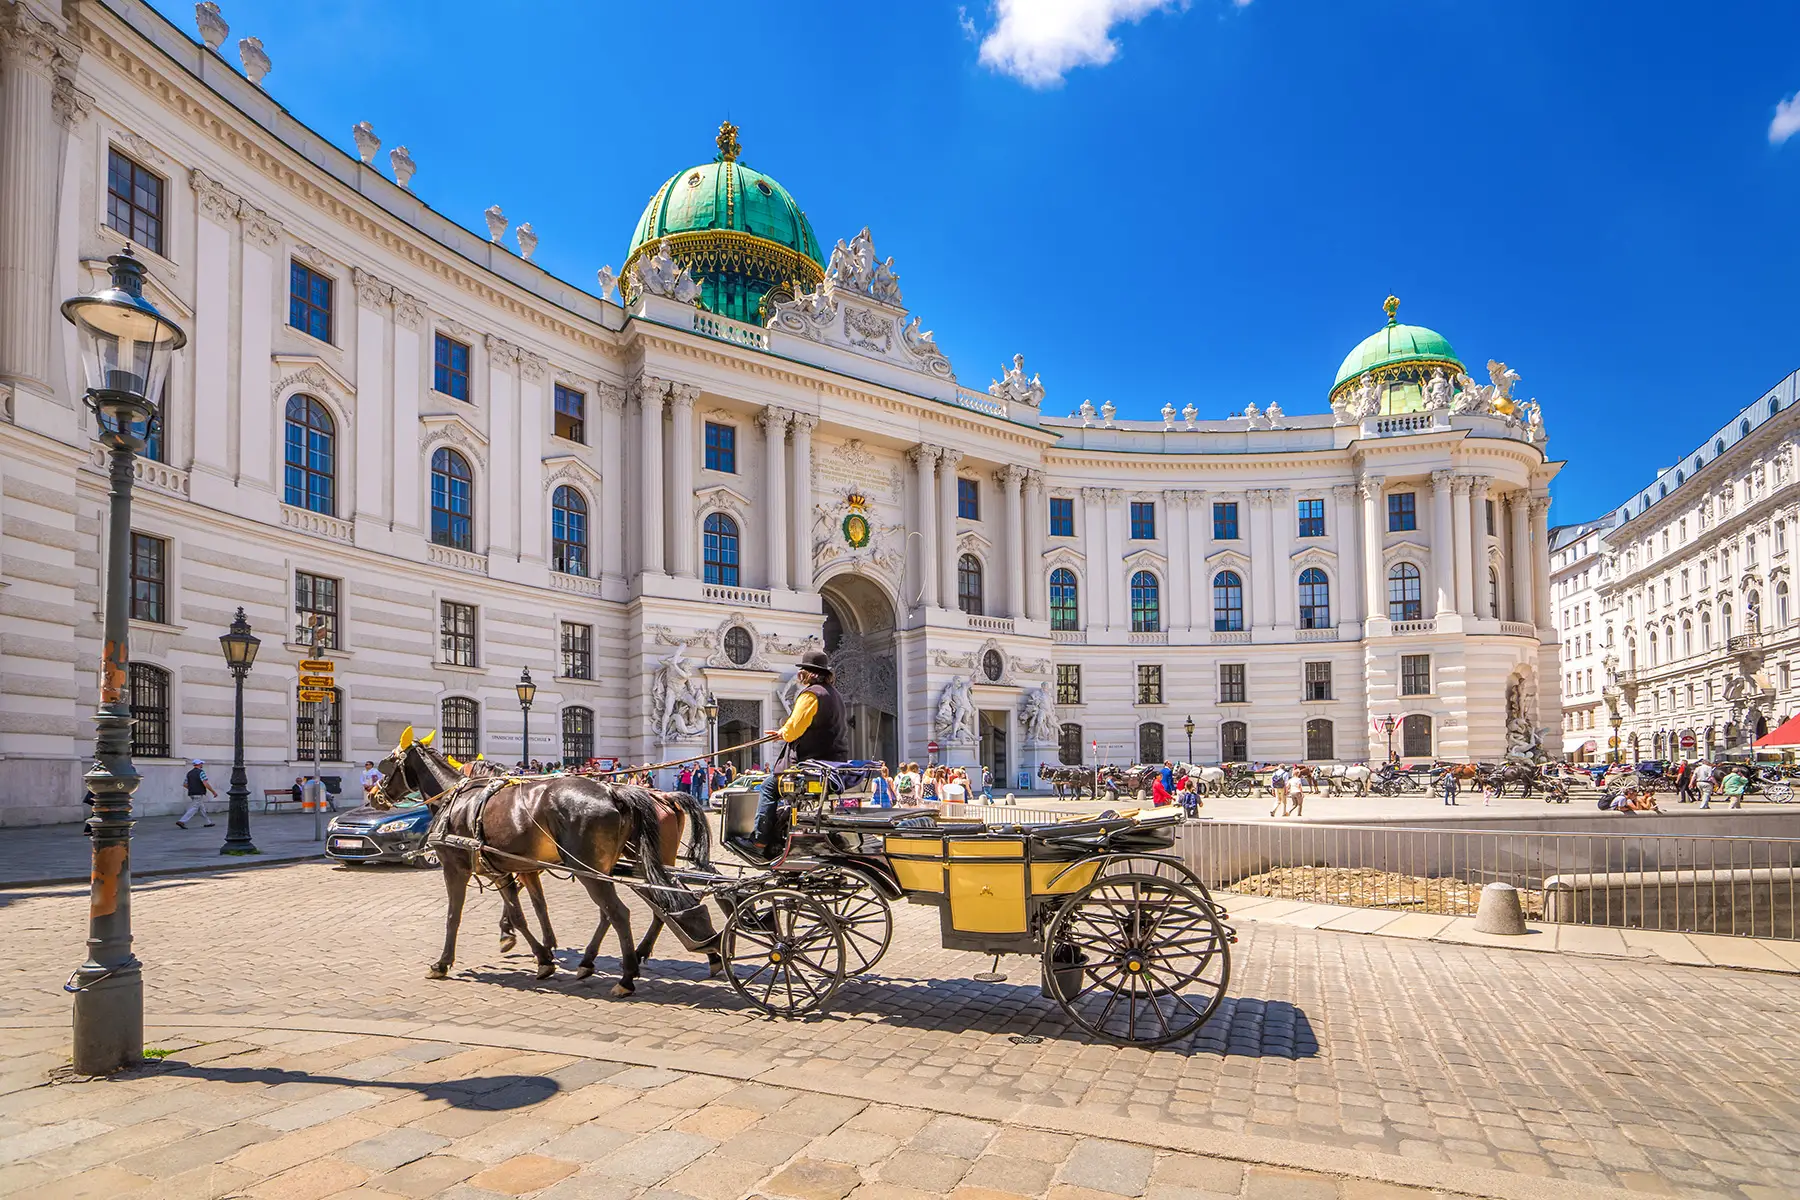 The Hofburg in Vienna